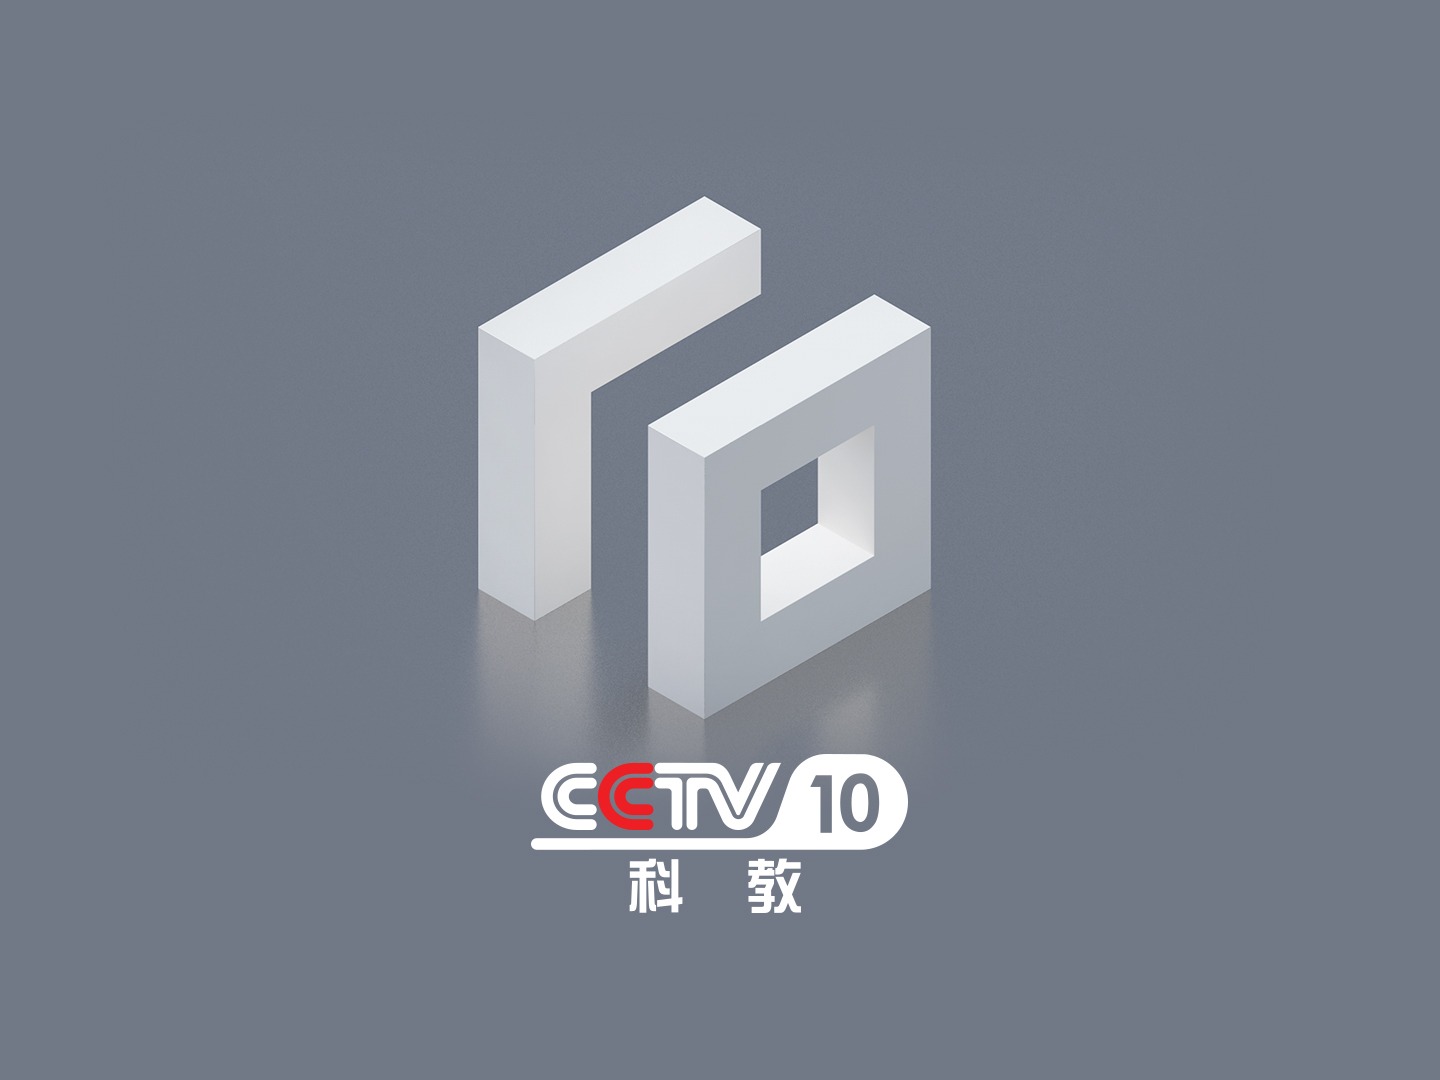 2019年cctv10科教频道改版——logo设计影视